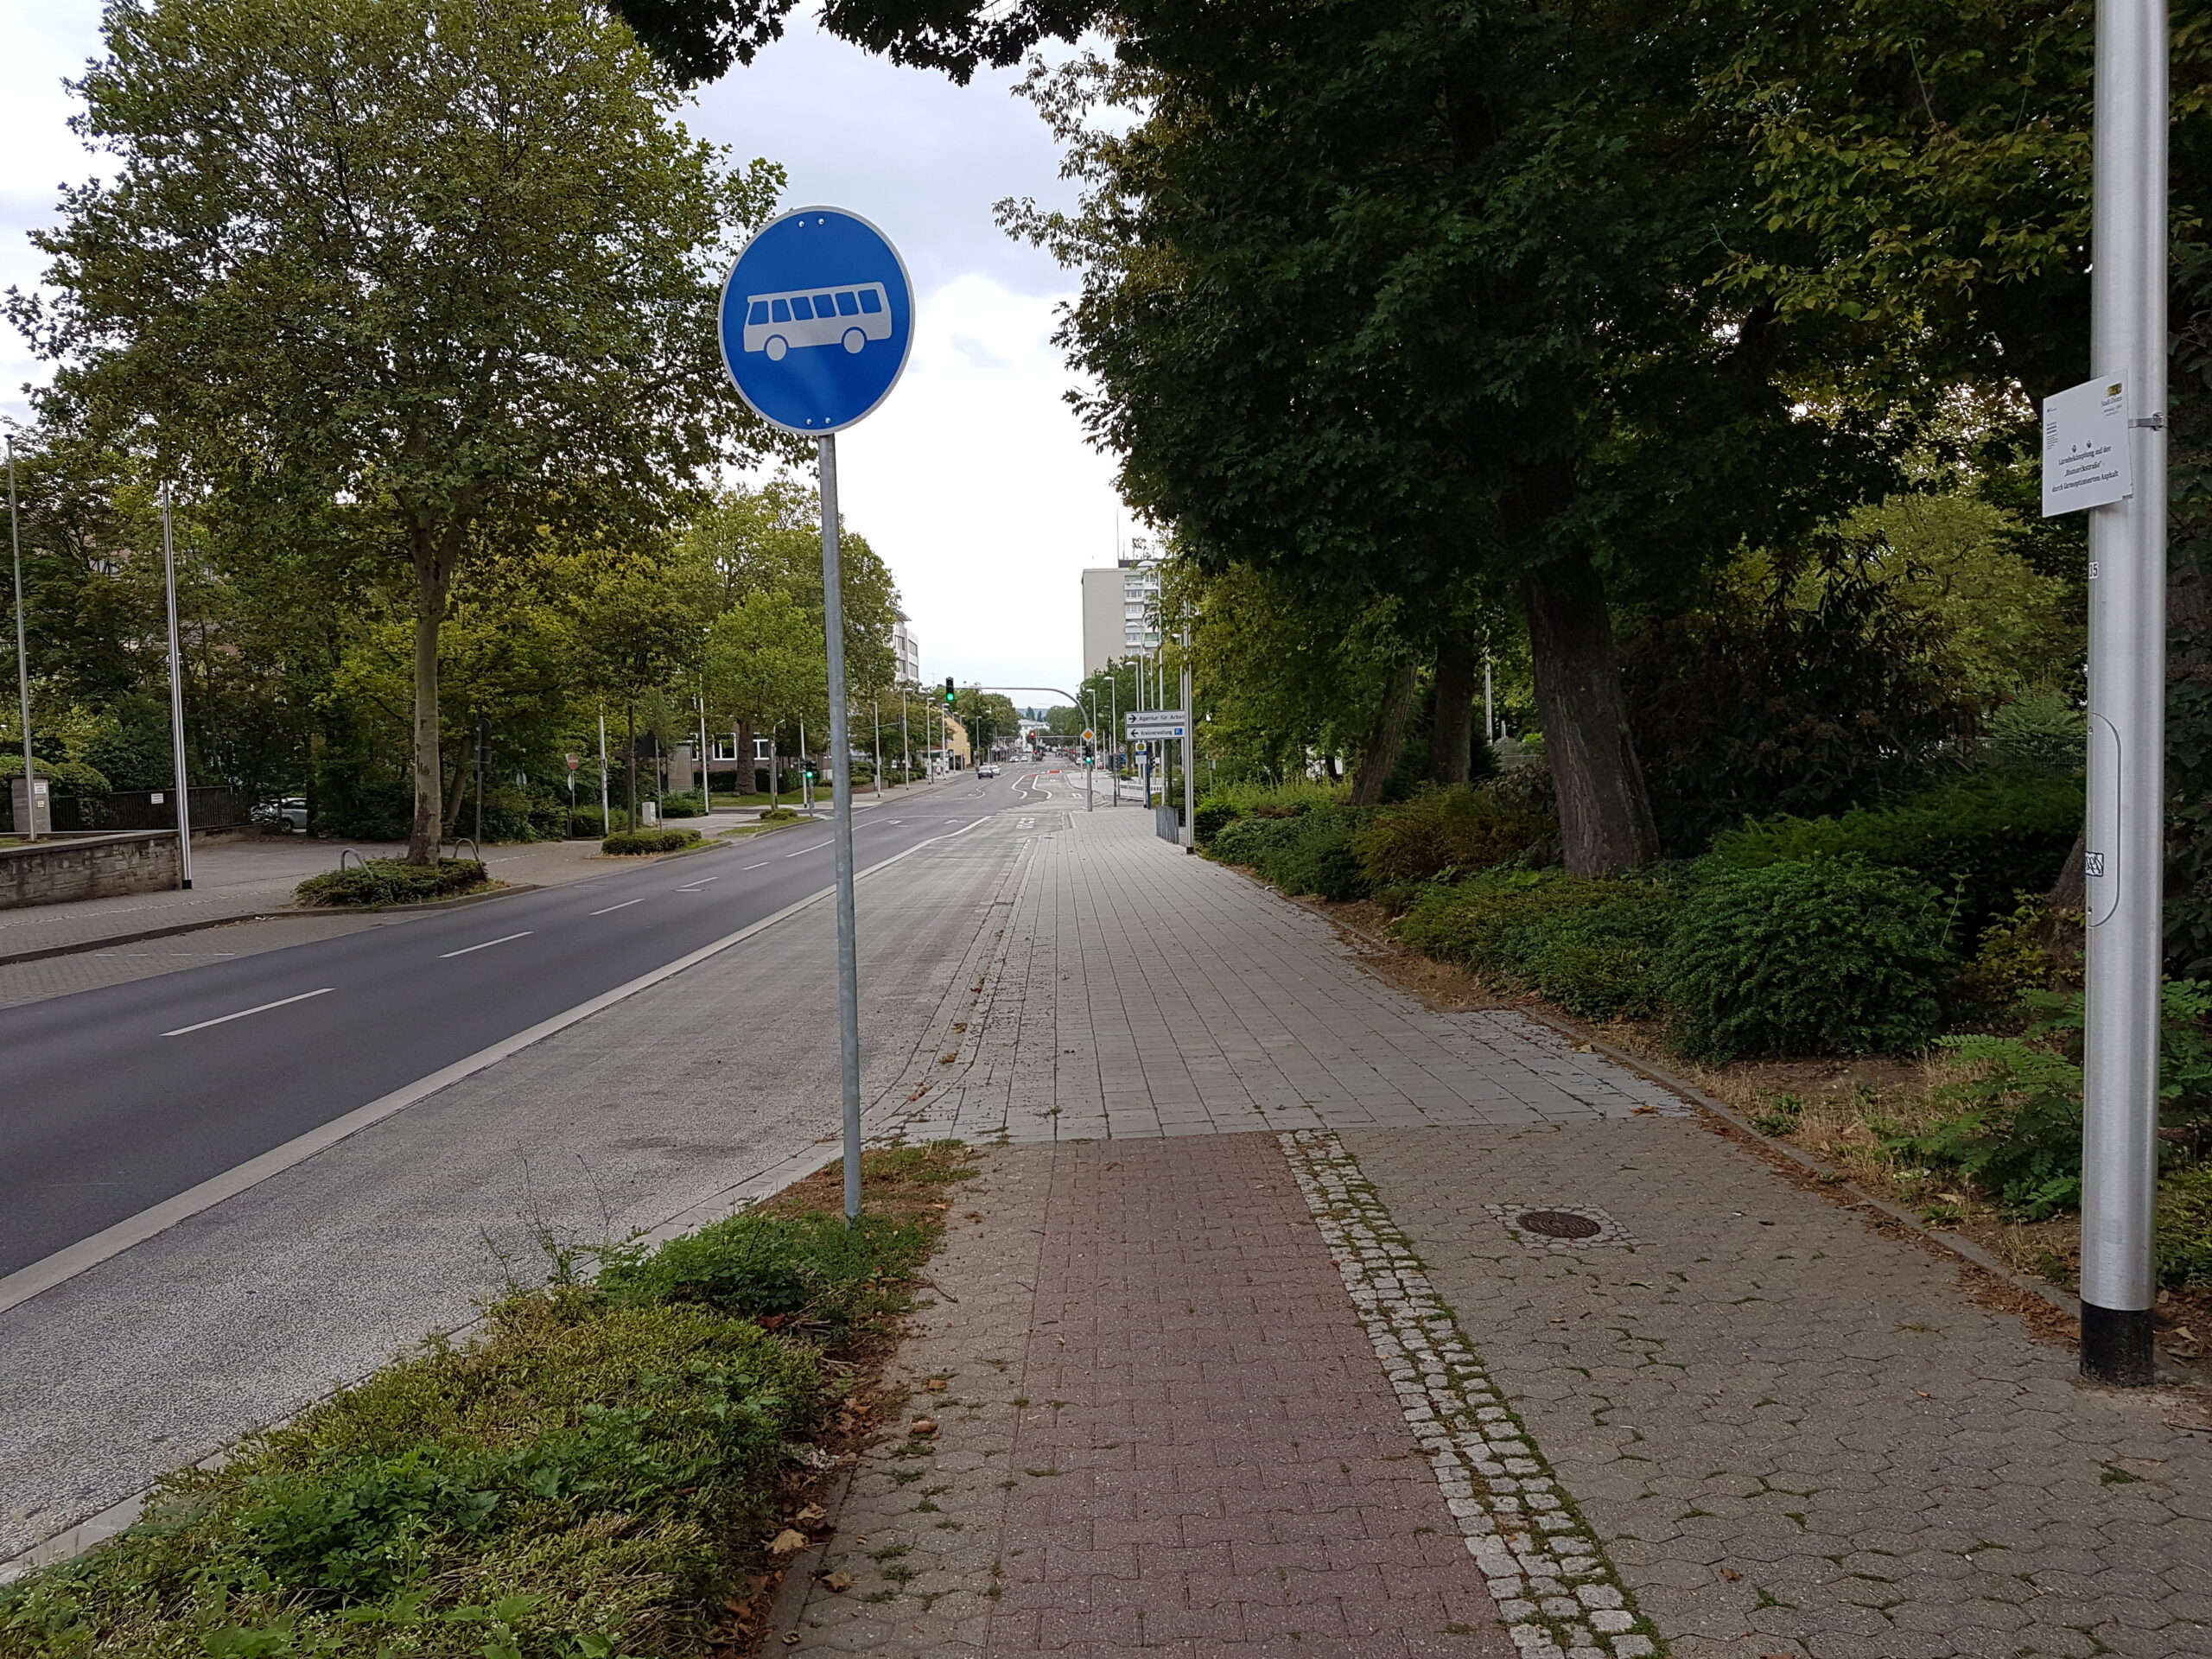 An der Bushaltstelle fehlt leider noch das geplante Schild "Radfahrer frei".